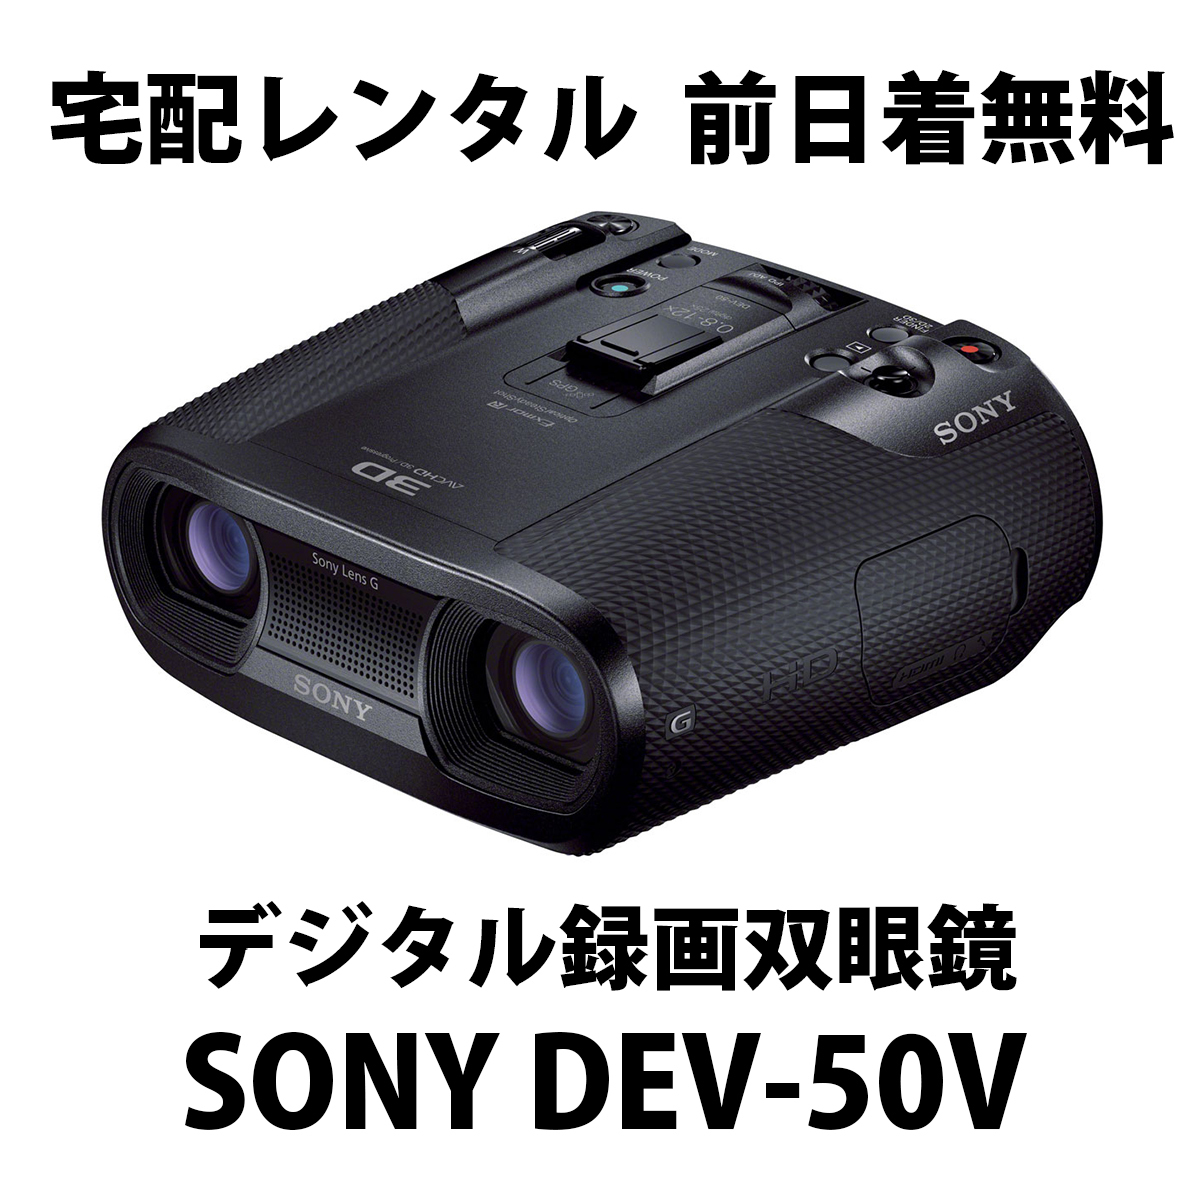 宅配レンタル☆SONY DEV-50V☆デジタル録画双眼鏡 1日3,980円 - レンタル